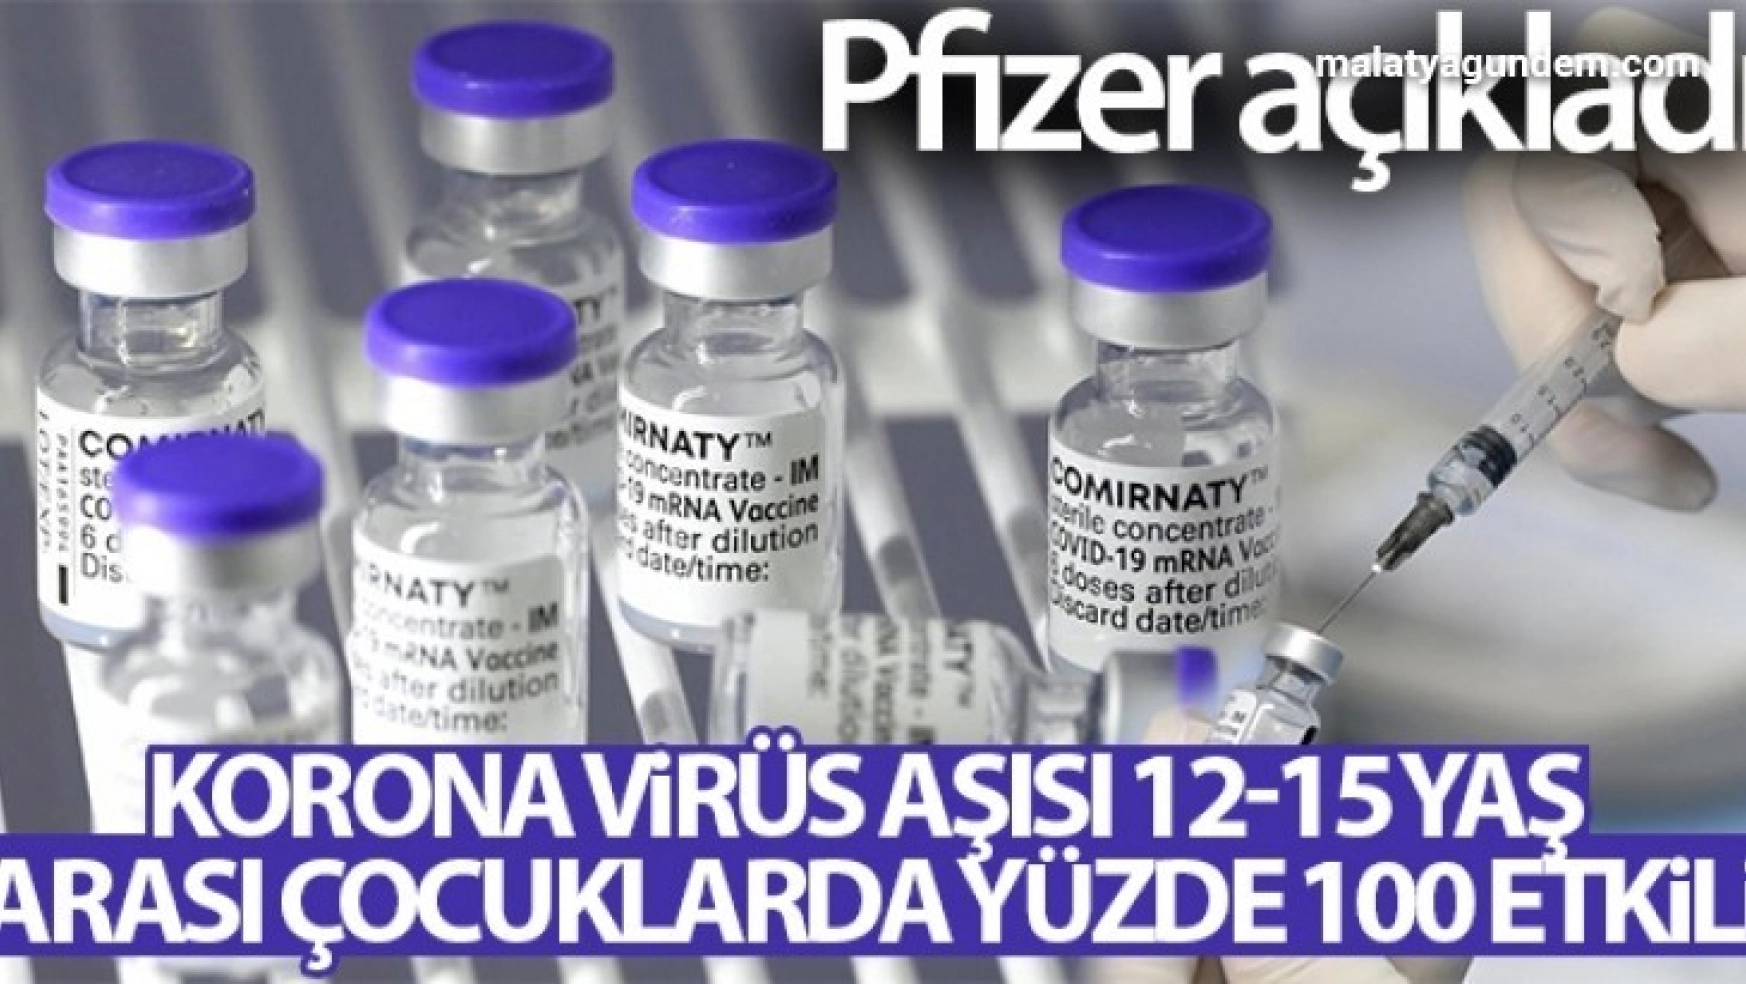 Pfizer: 'Korona virüs aşısı 12-15 yaş arası çocuklarda yüzde 100 etkili'